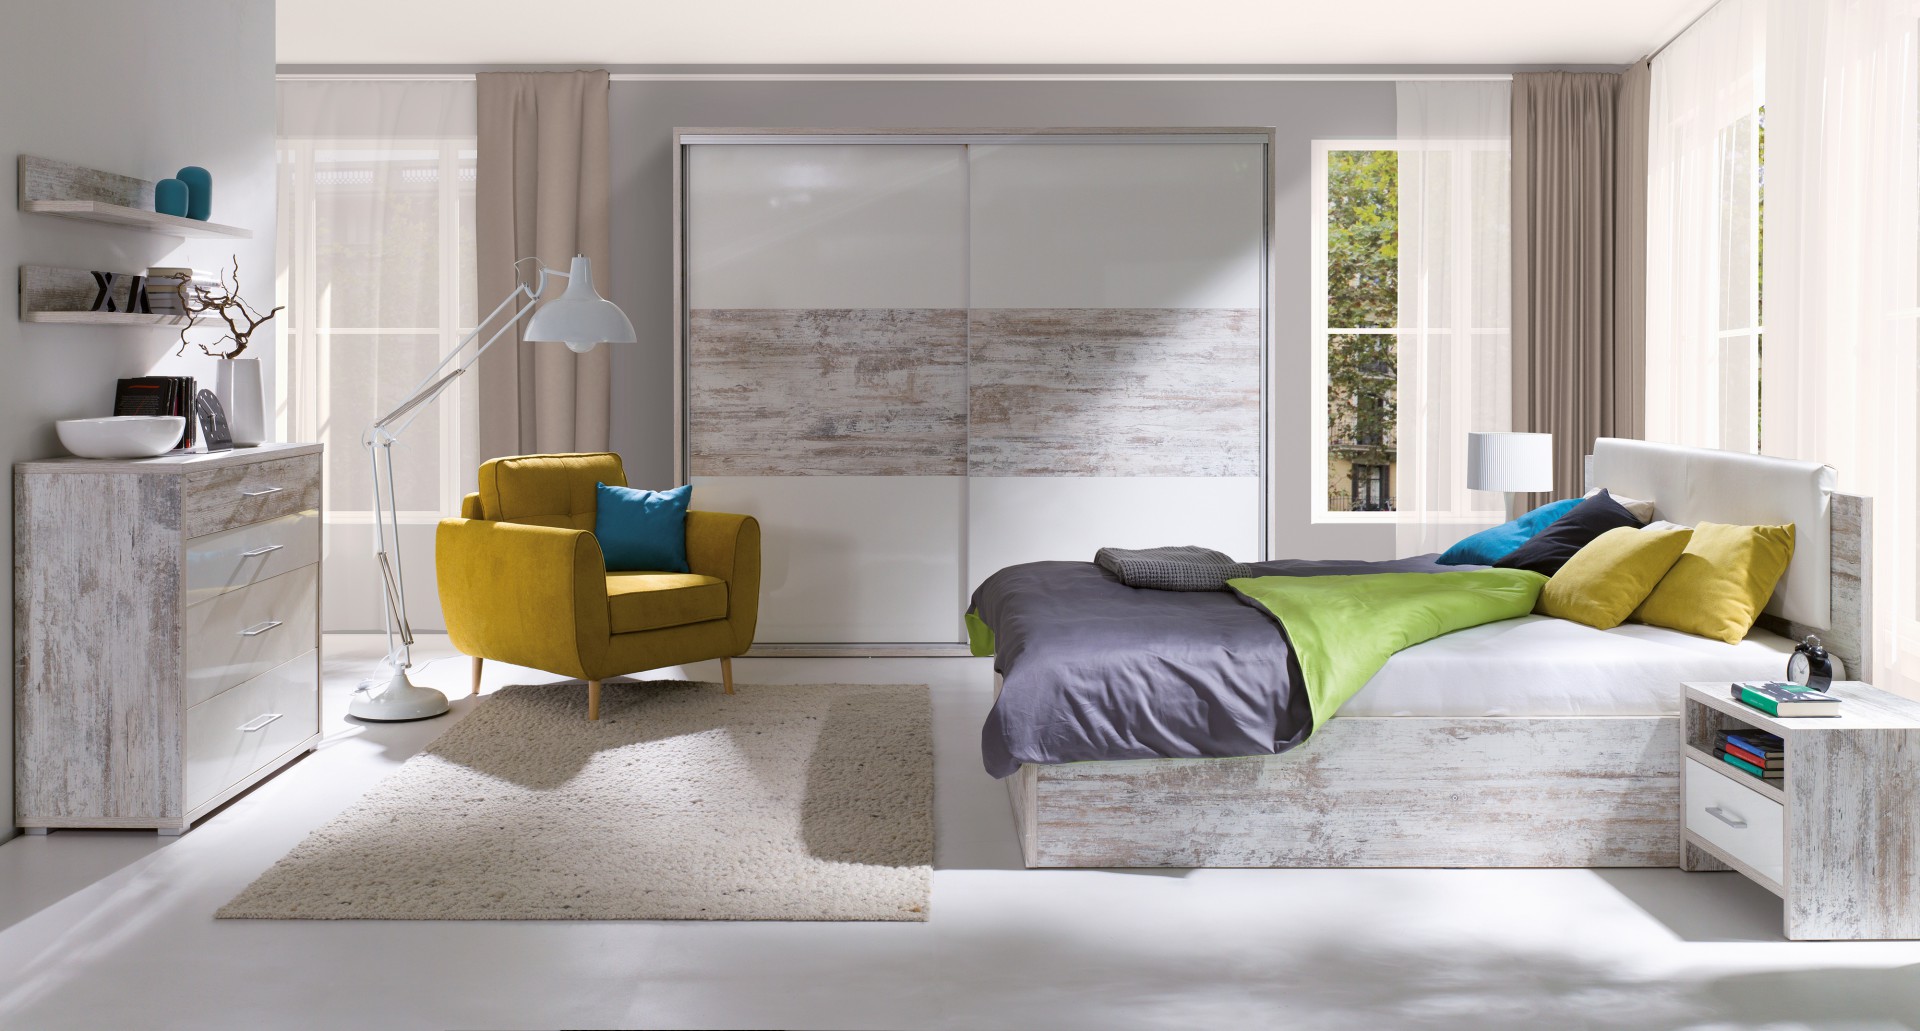 Sypialnia Pola charakteryzuje się prostymi, minimalistycznymi kształtami. W skład kolekcji wchodzą szafy w dwóch szerokościach, komody, stoliki nocne i półki. Fot. Wajnert Meble